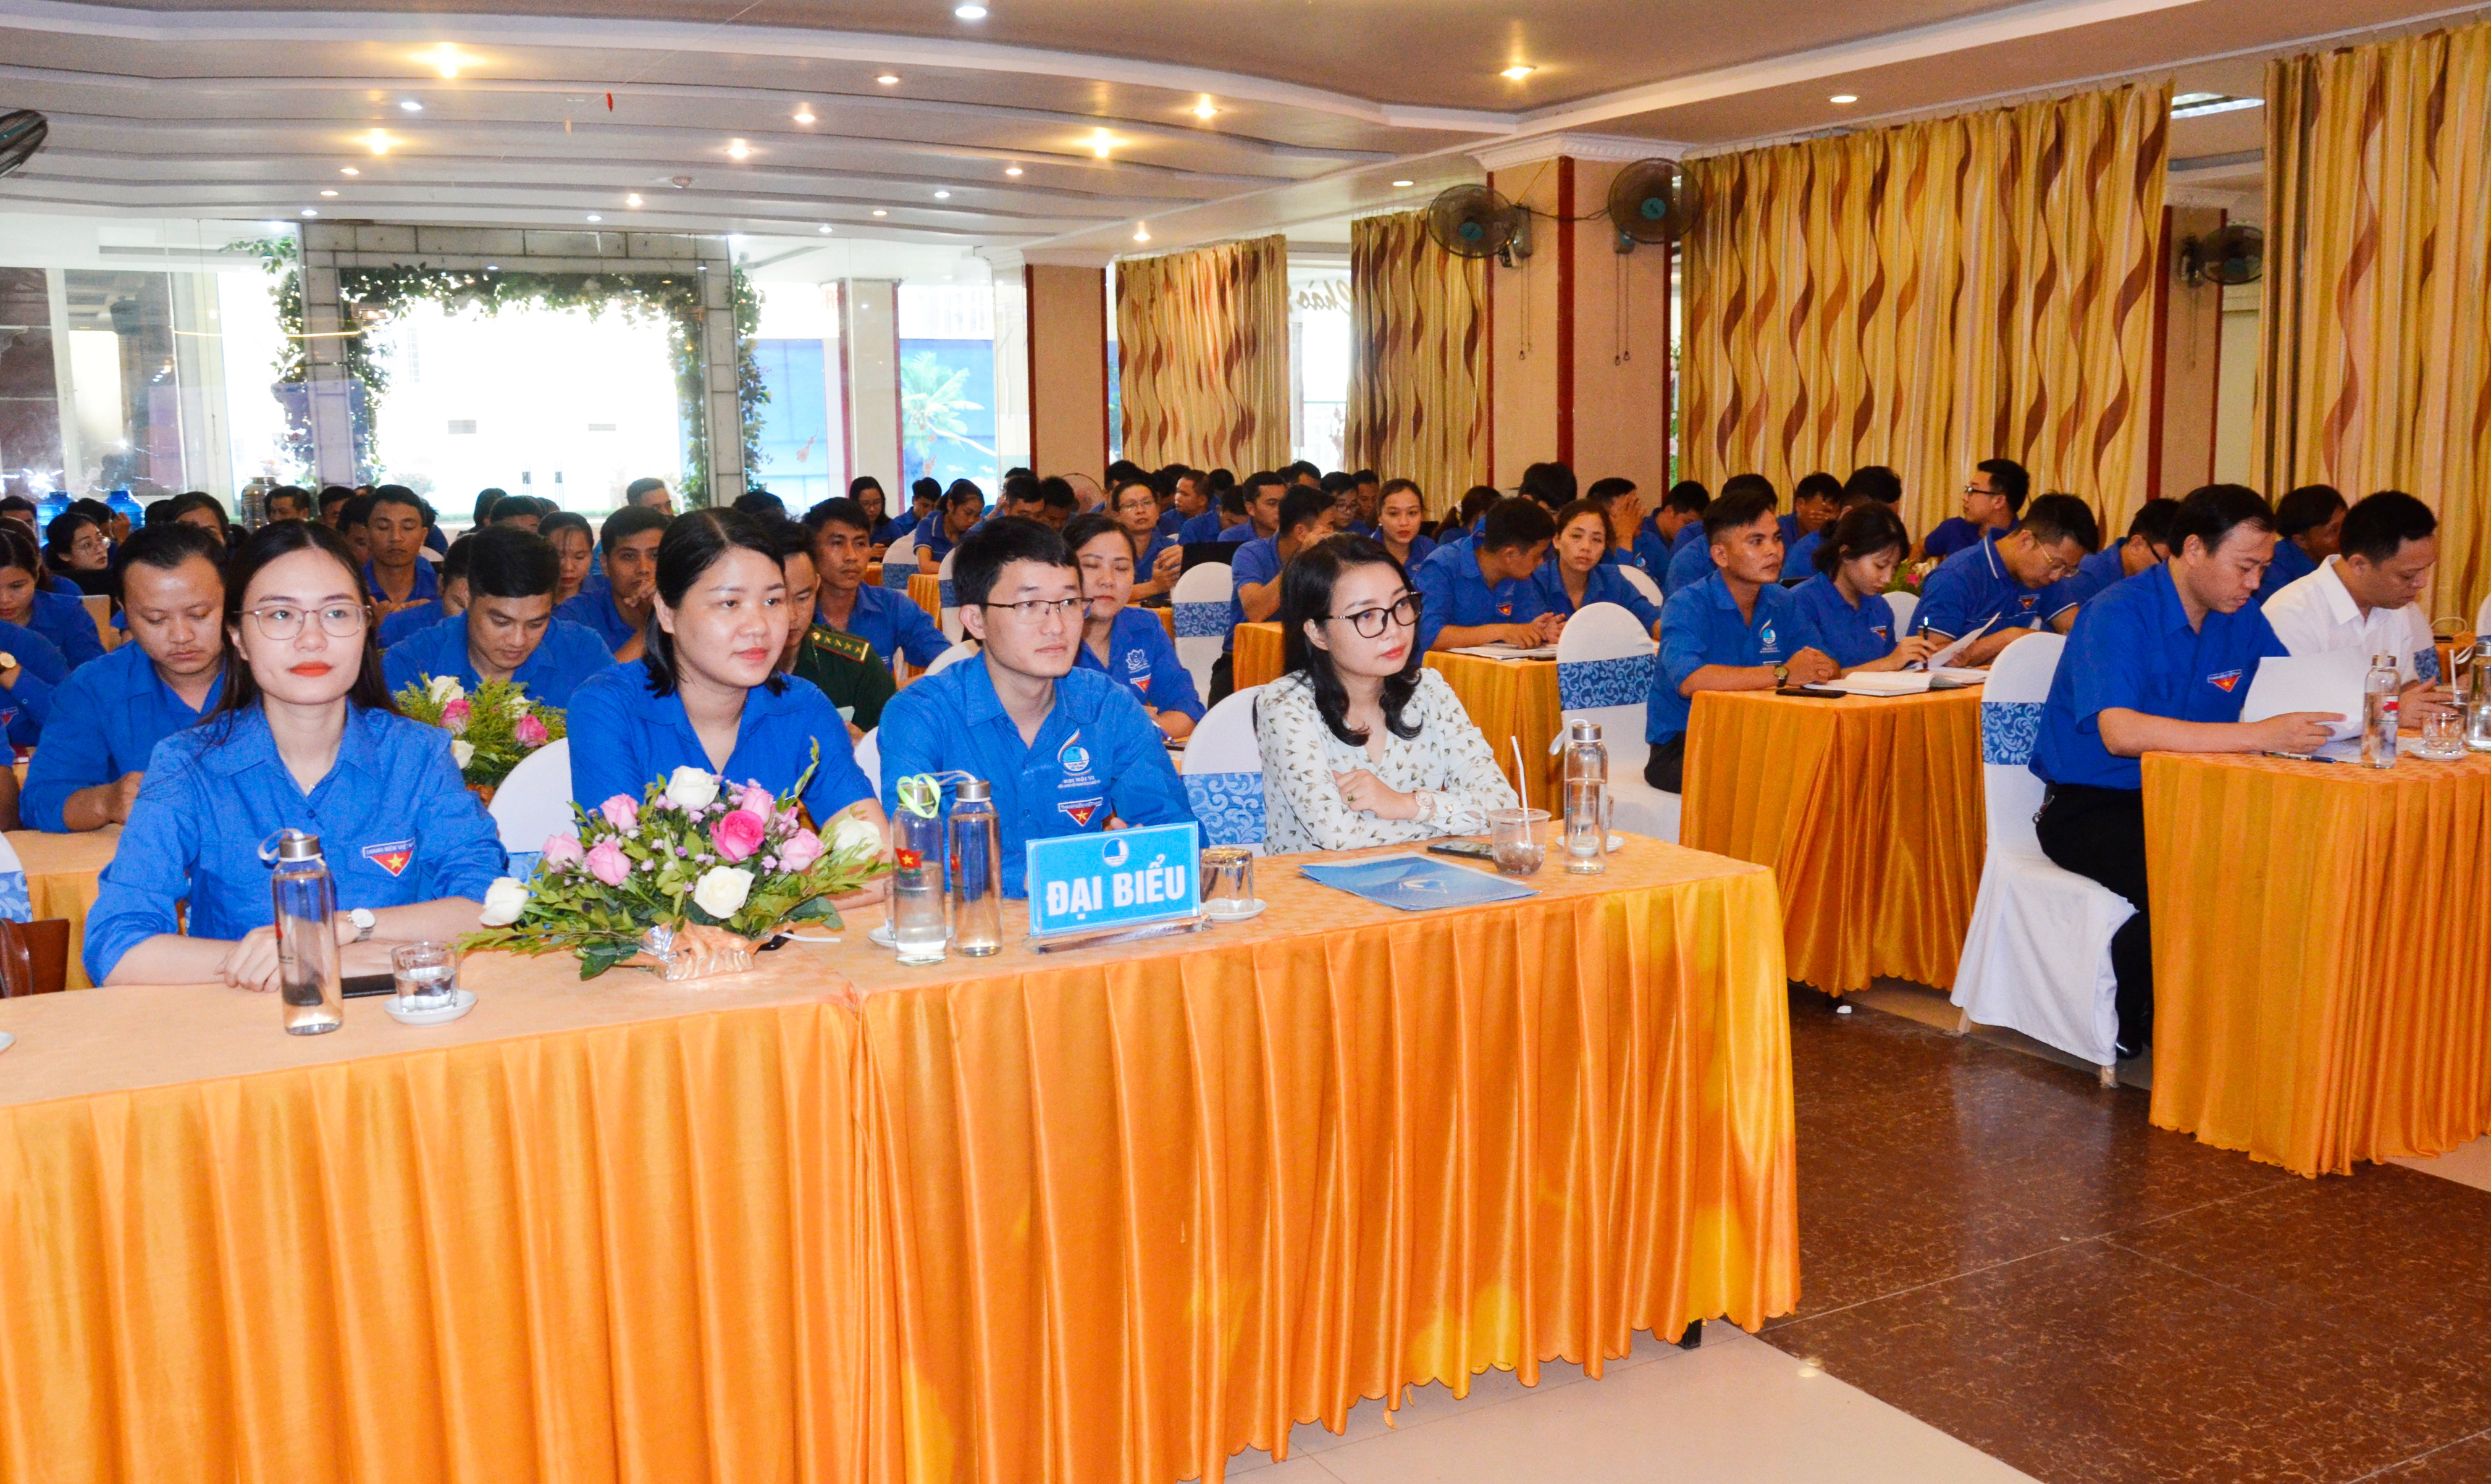 Dự hội nghị có các đồng chí Nguyễn Thị Thơm - Quyền Bí thư Tỉnh đoàn, Chu Đức Thái - Phó Bí thư Tỉnh đoàn, Chủ tịch Hội LHTN tỉnh.